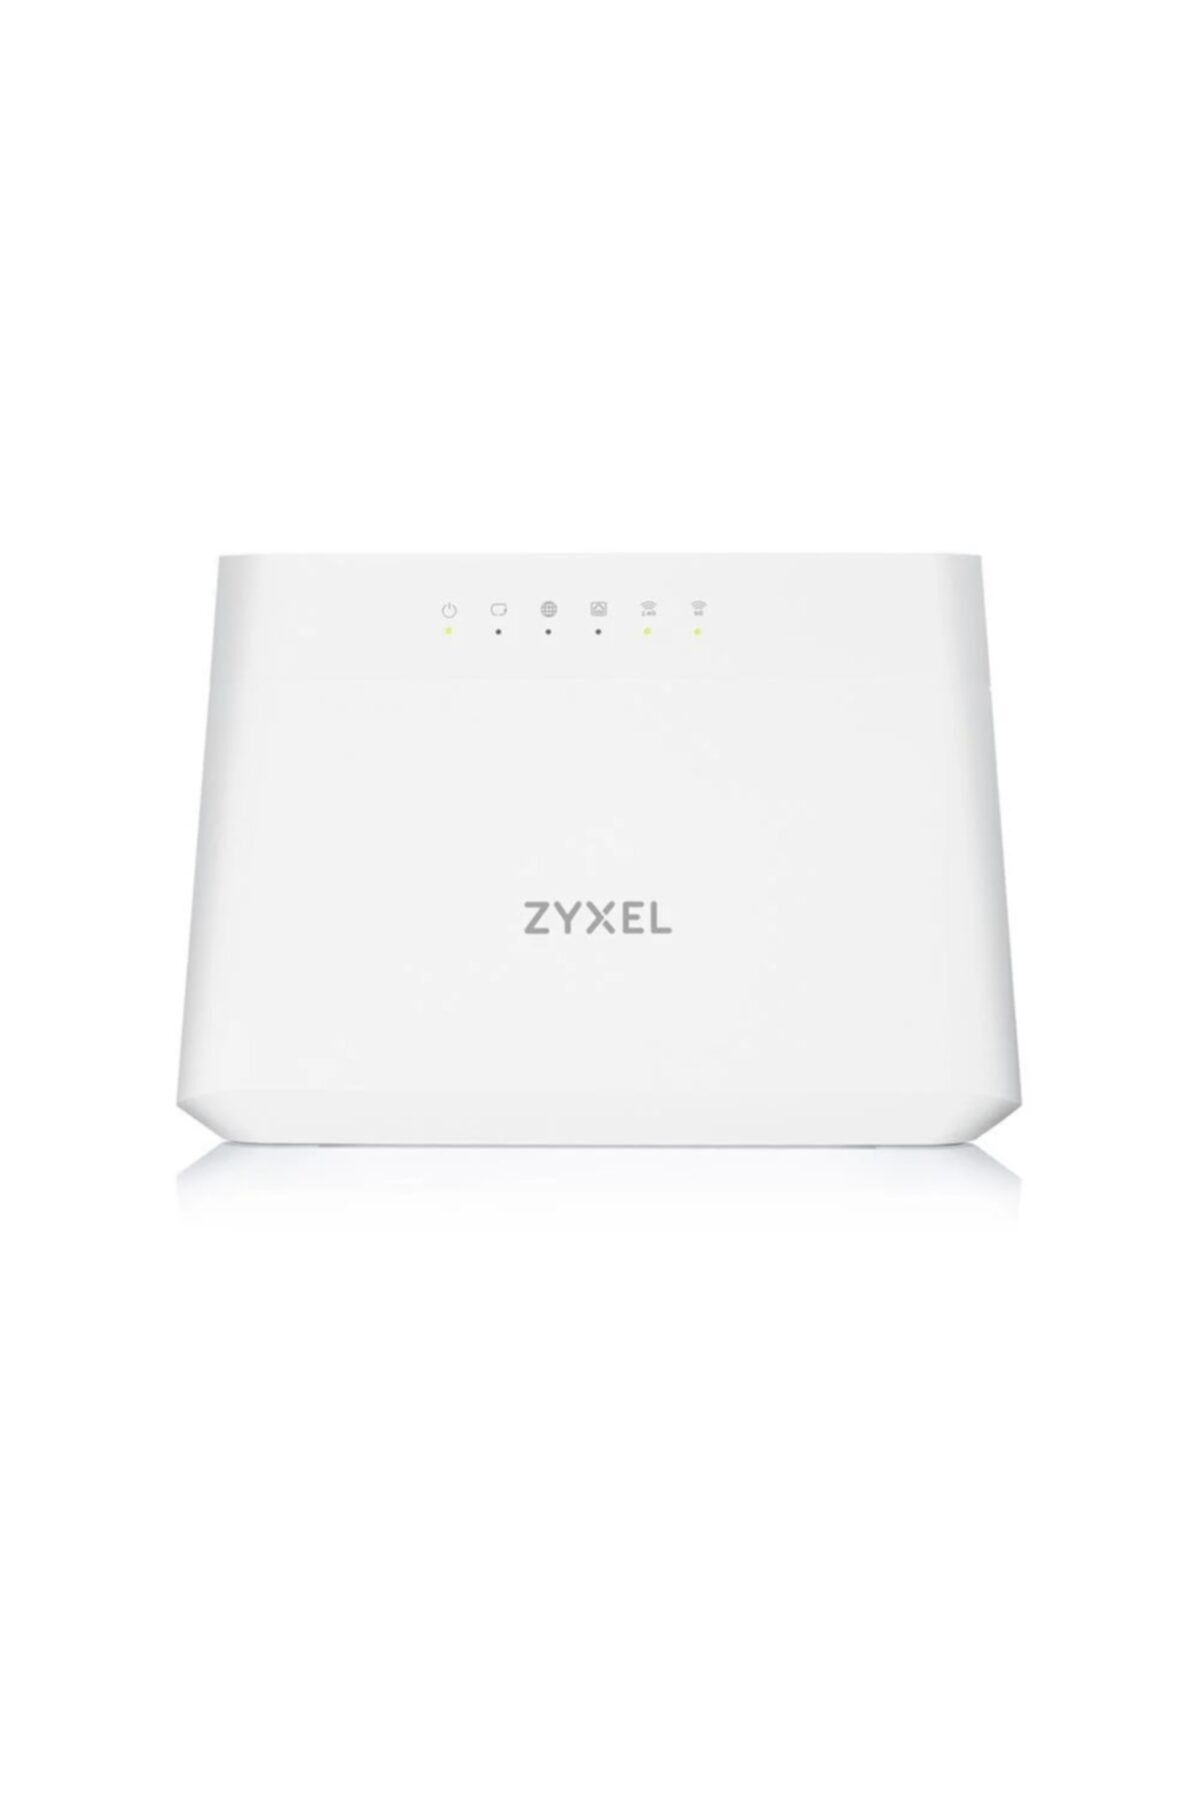 ZyXEL Vmg3625-t50b Adsl2+/vdsl2 Wi-fi Modem